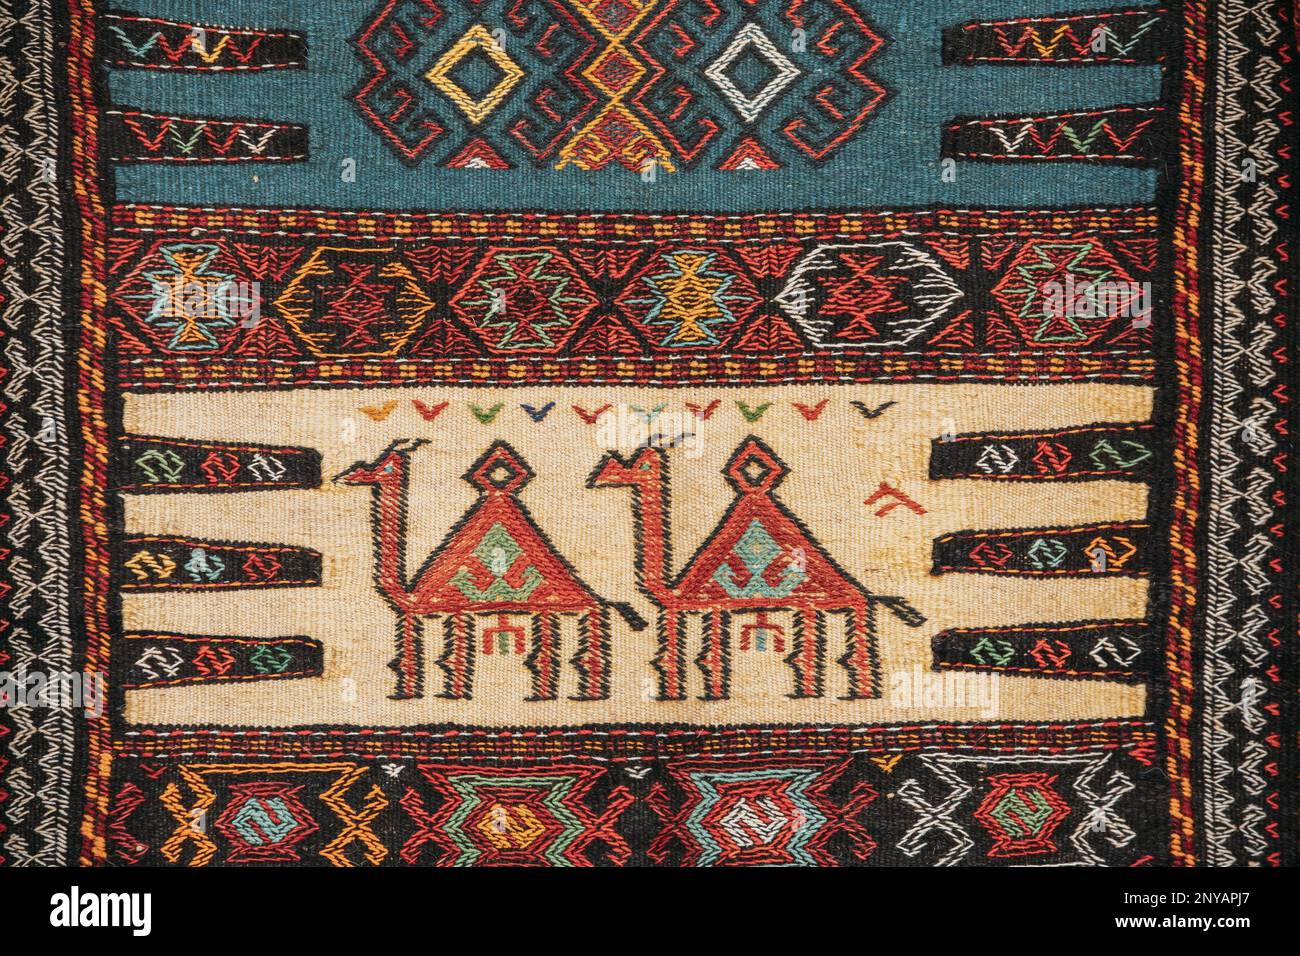 Tappeto Mosaico orientale colorato con ornamento tradizionale Folk Animal. Tappeto a motivi geometrici. Parte del tappeto Orientale. Primo piano immagine di tessuto fatto a mano Foto Stock